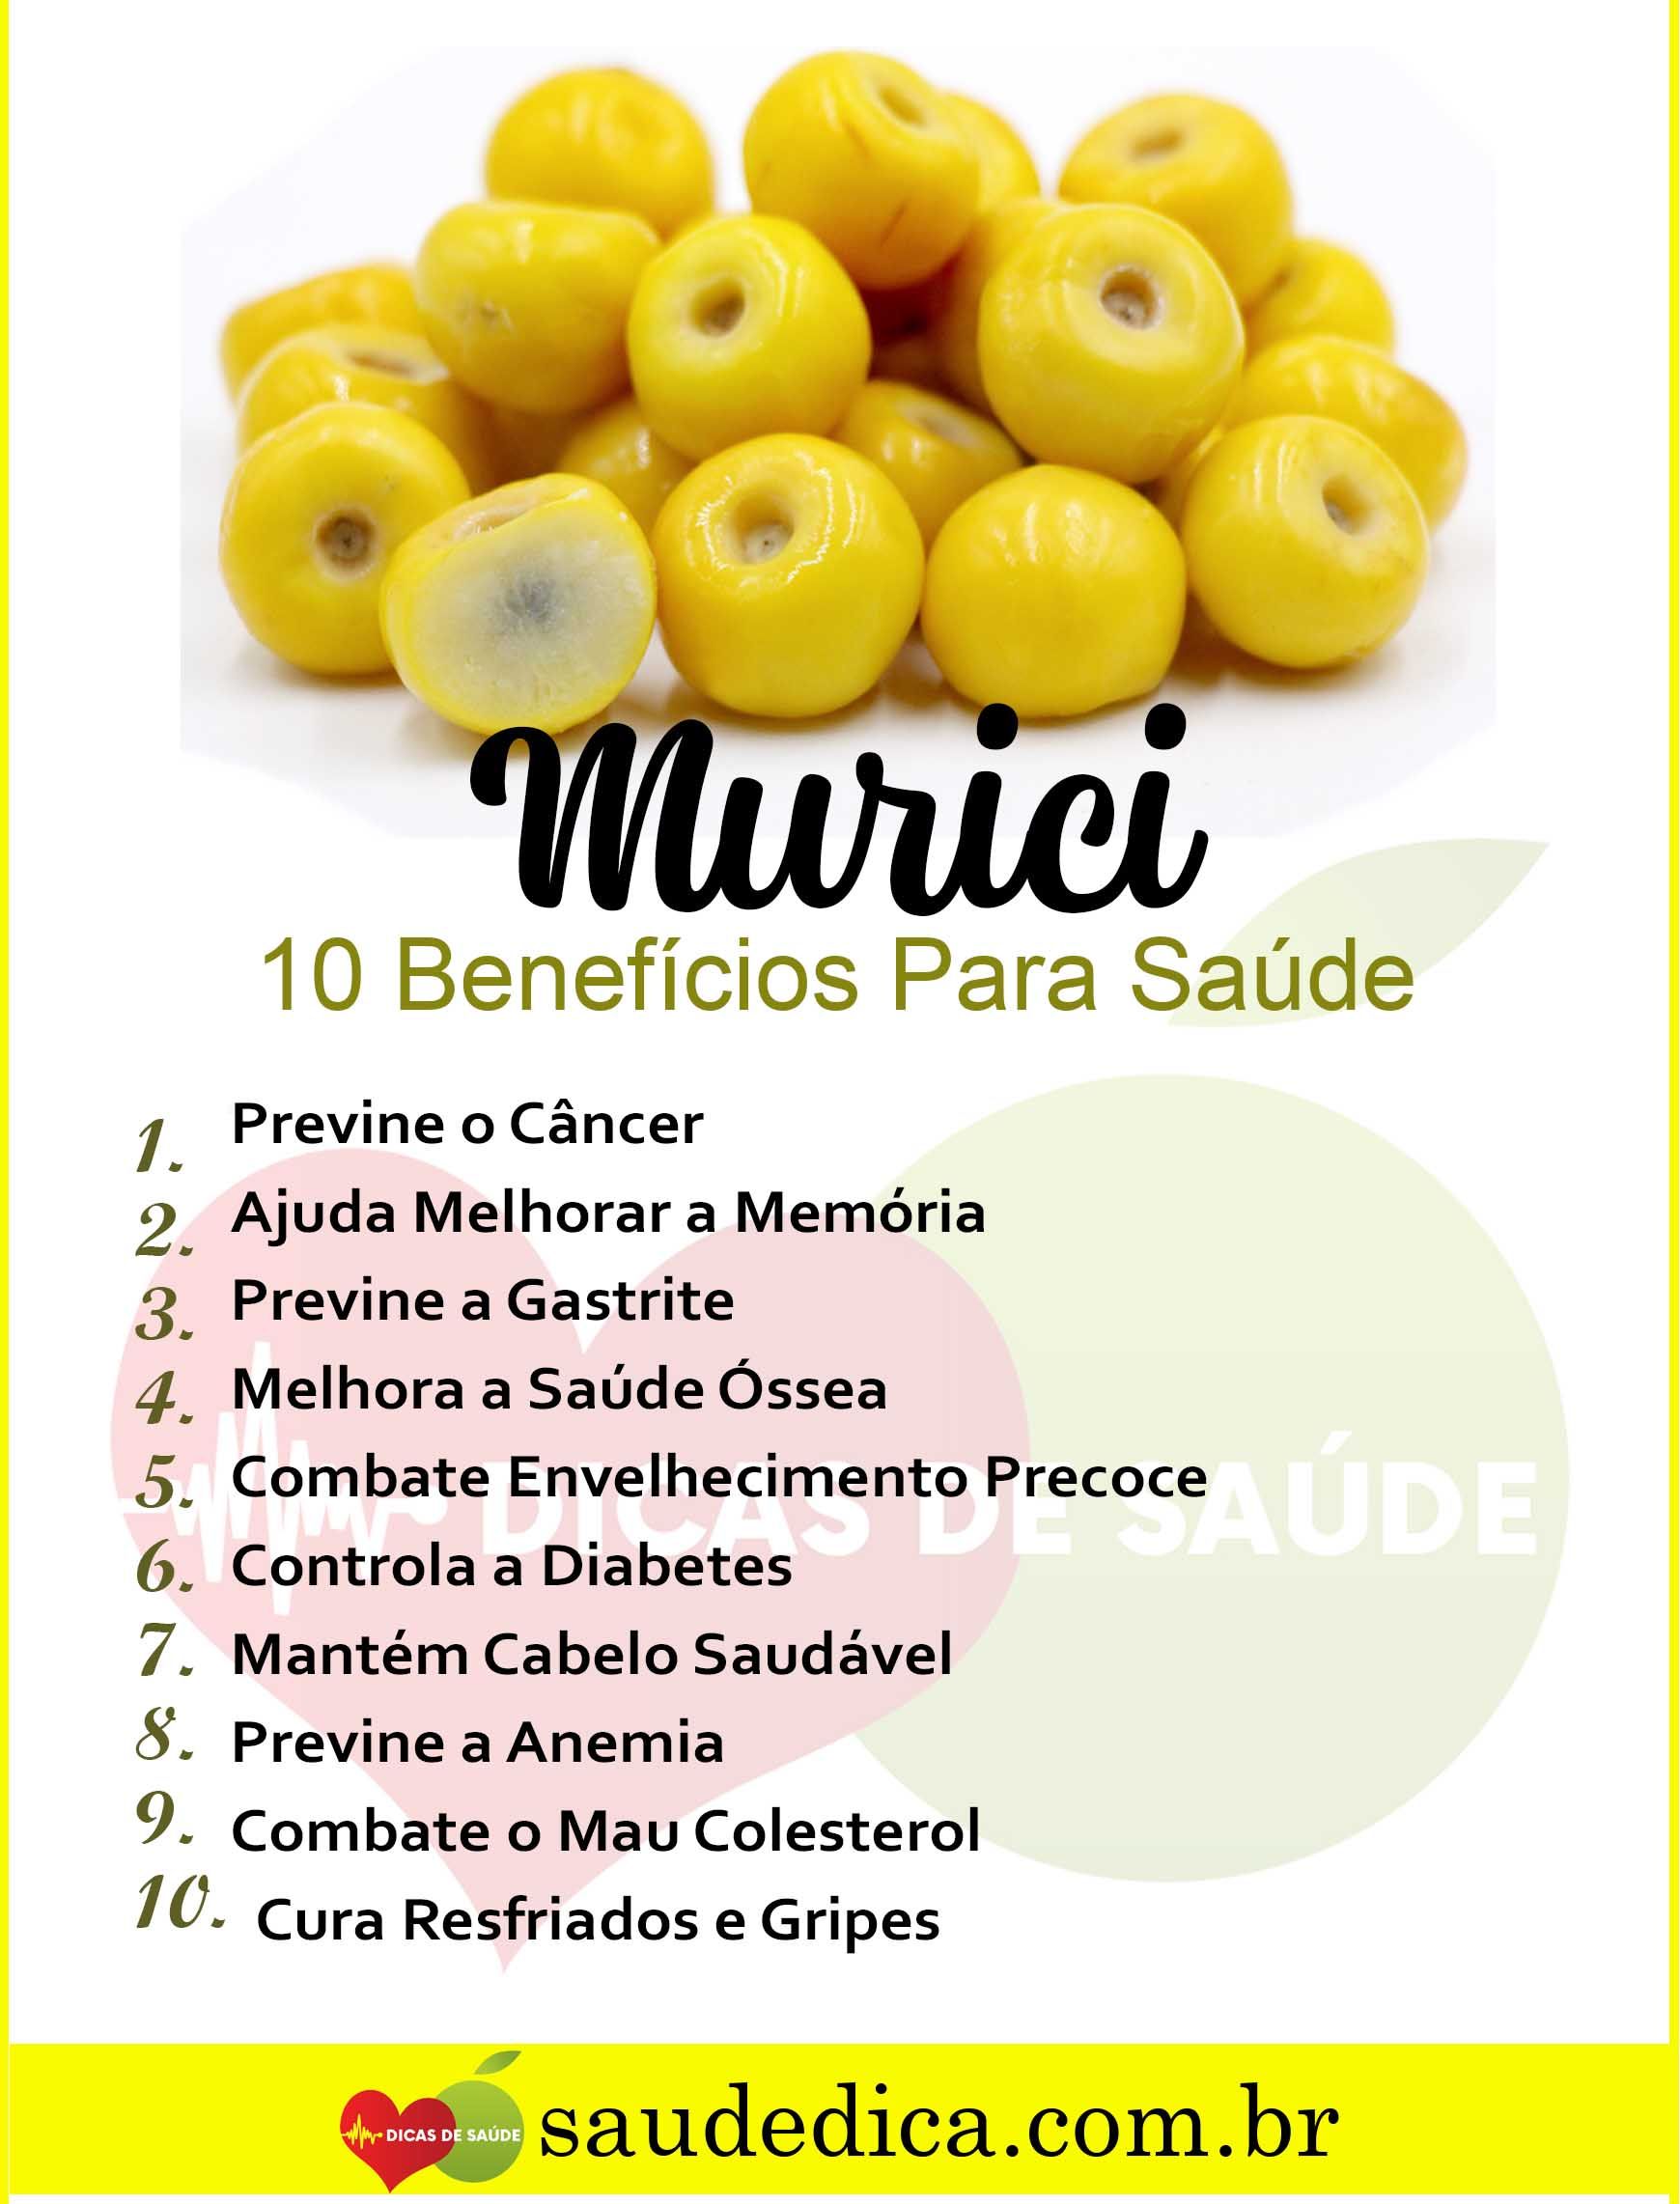  Entdecken Sie die 5 wichtigsten Vorteile von Murici für Ihre Gesundheit